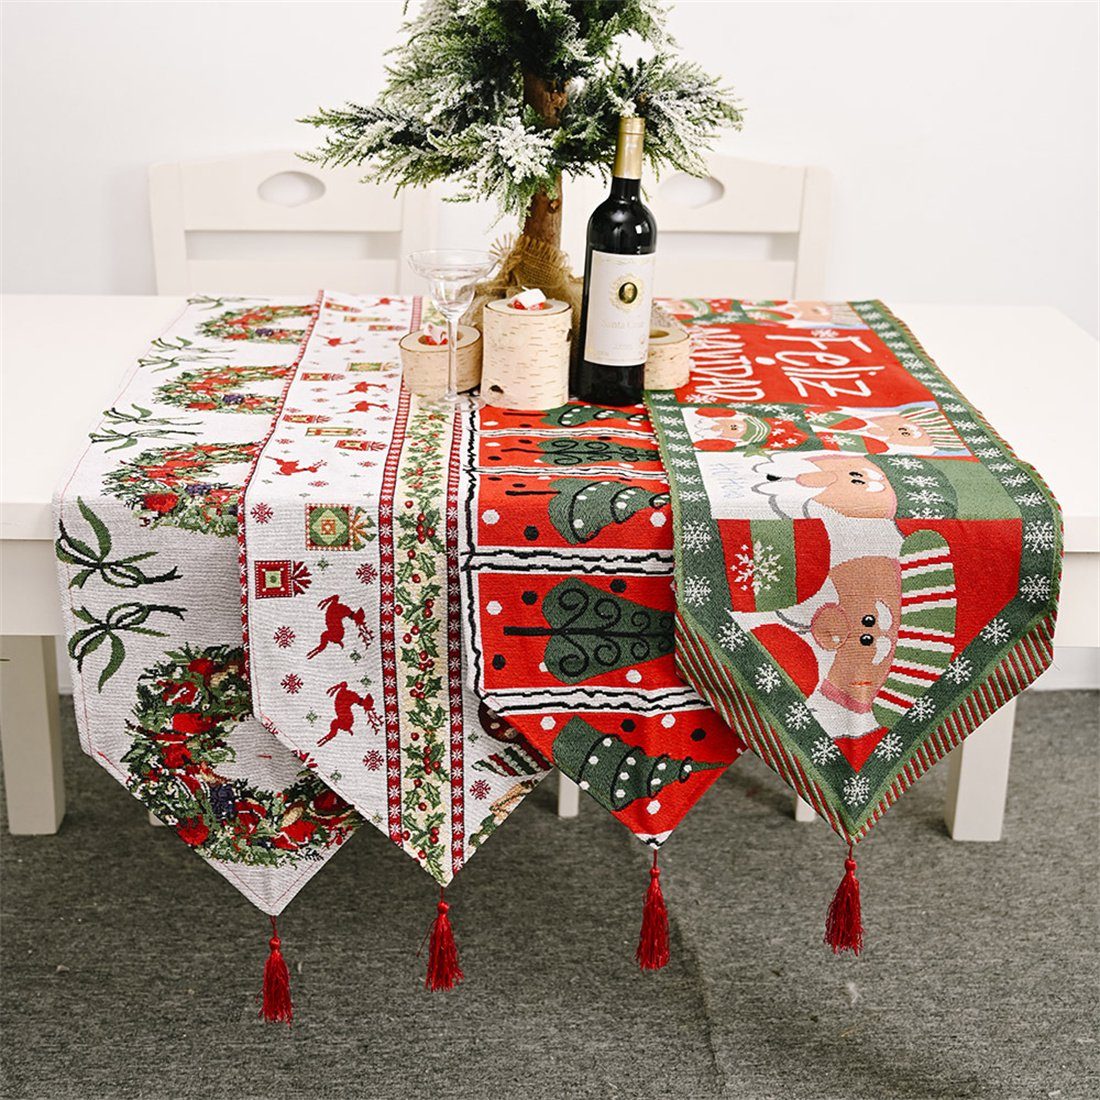 DÖRÖY Tischfahne B Tischdekoration Tischläufer, festliche Weihnachtliche Tischläufer